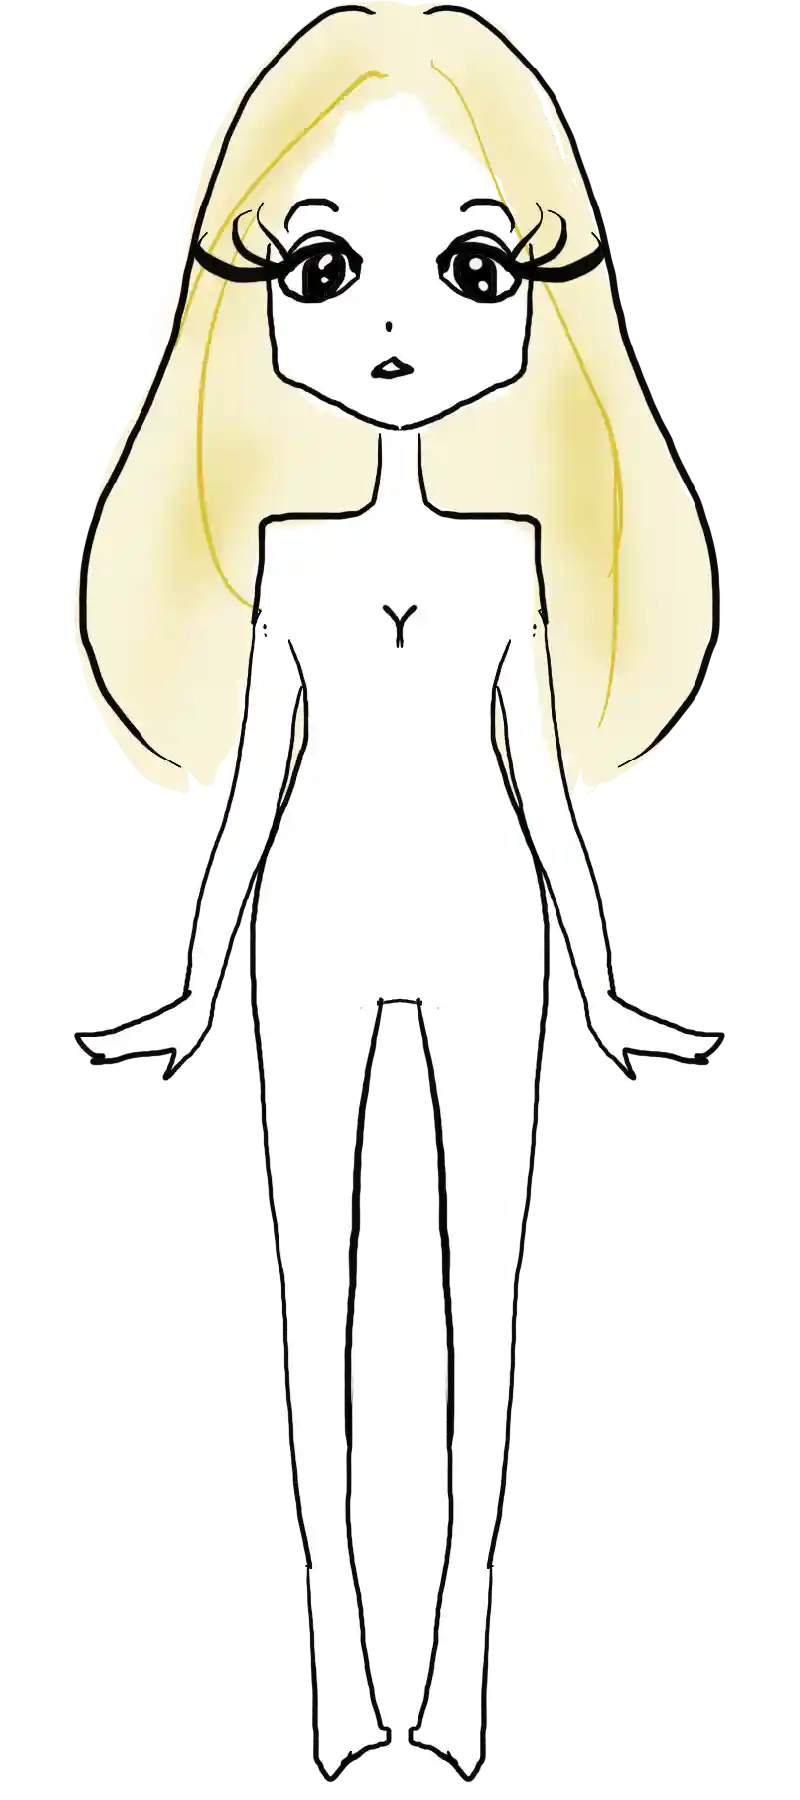 女性の体 全身 上半身 正面 横 後ろ姿 裸のおしゃれイラスト 無料素材 おのちあきファッションイラスト ガールズイラスト